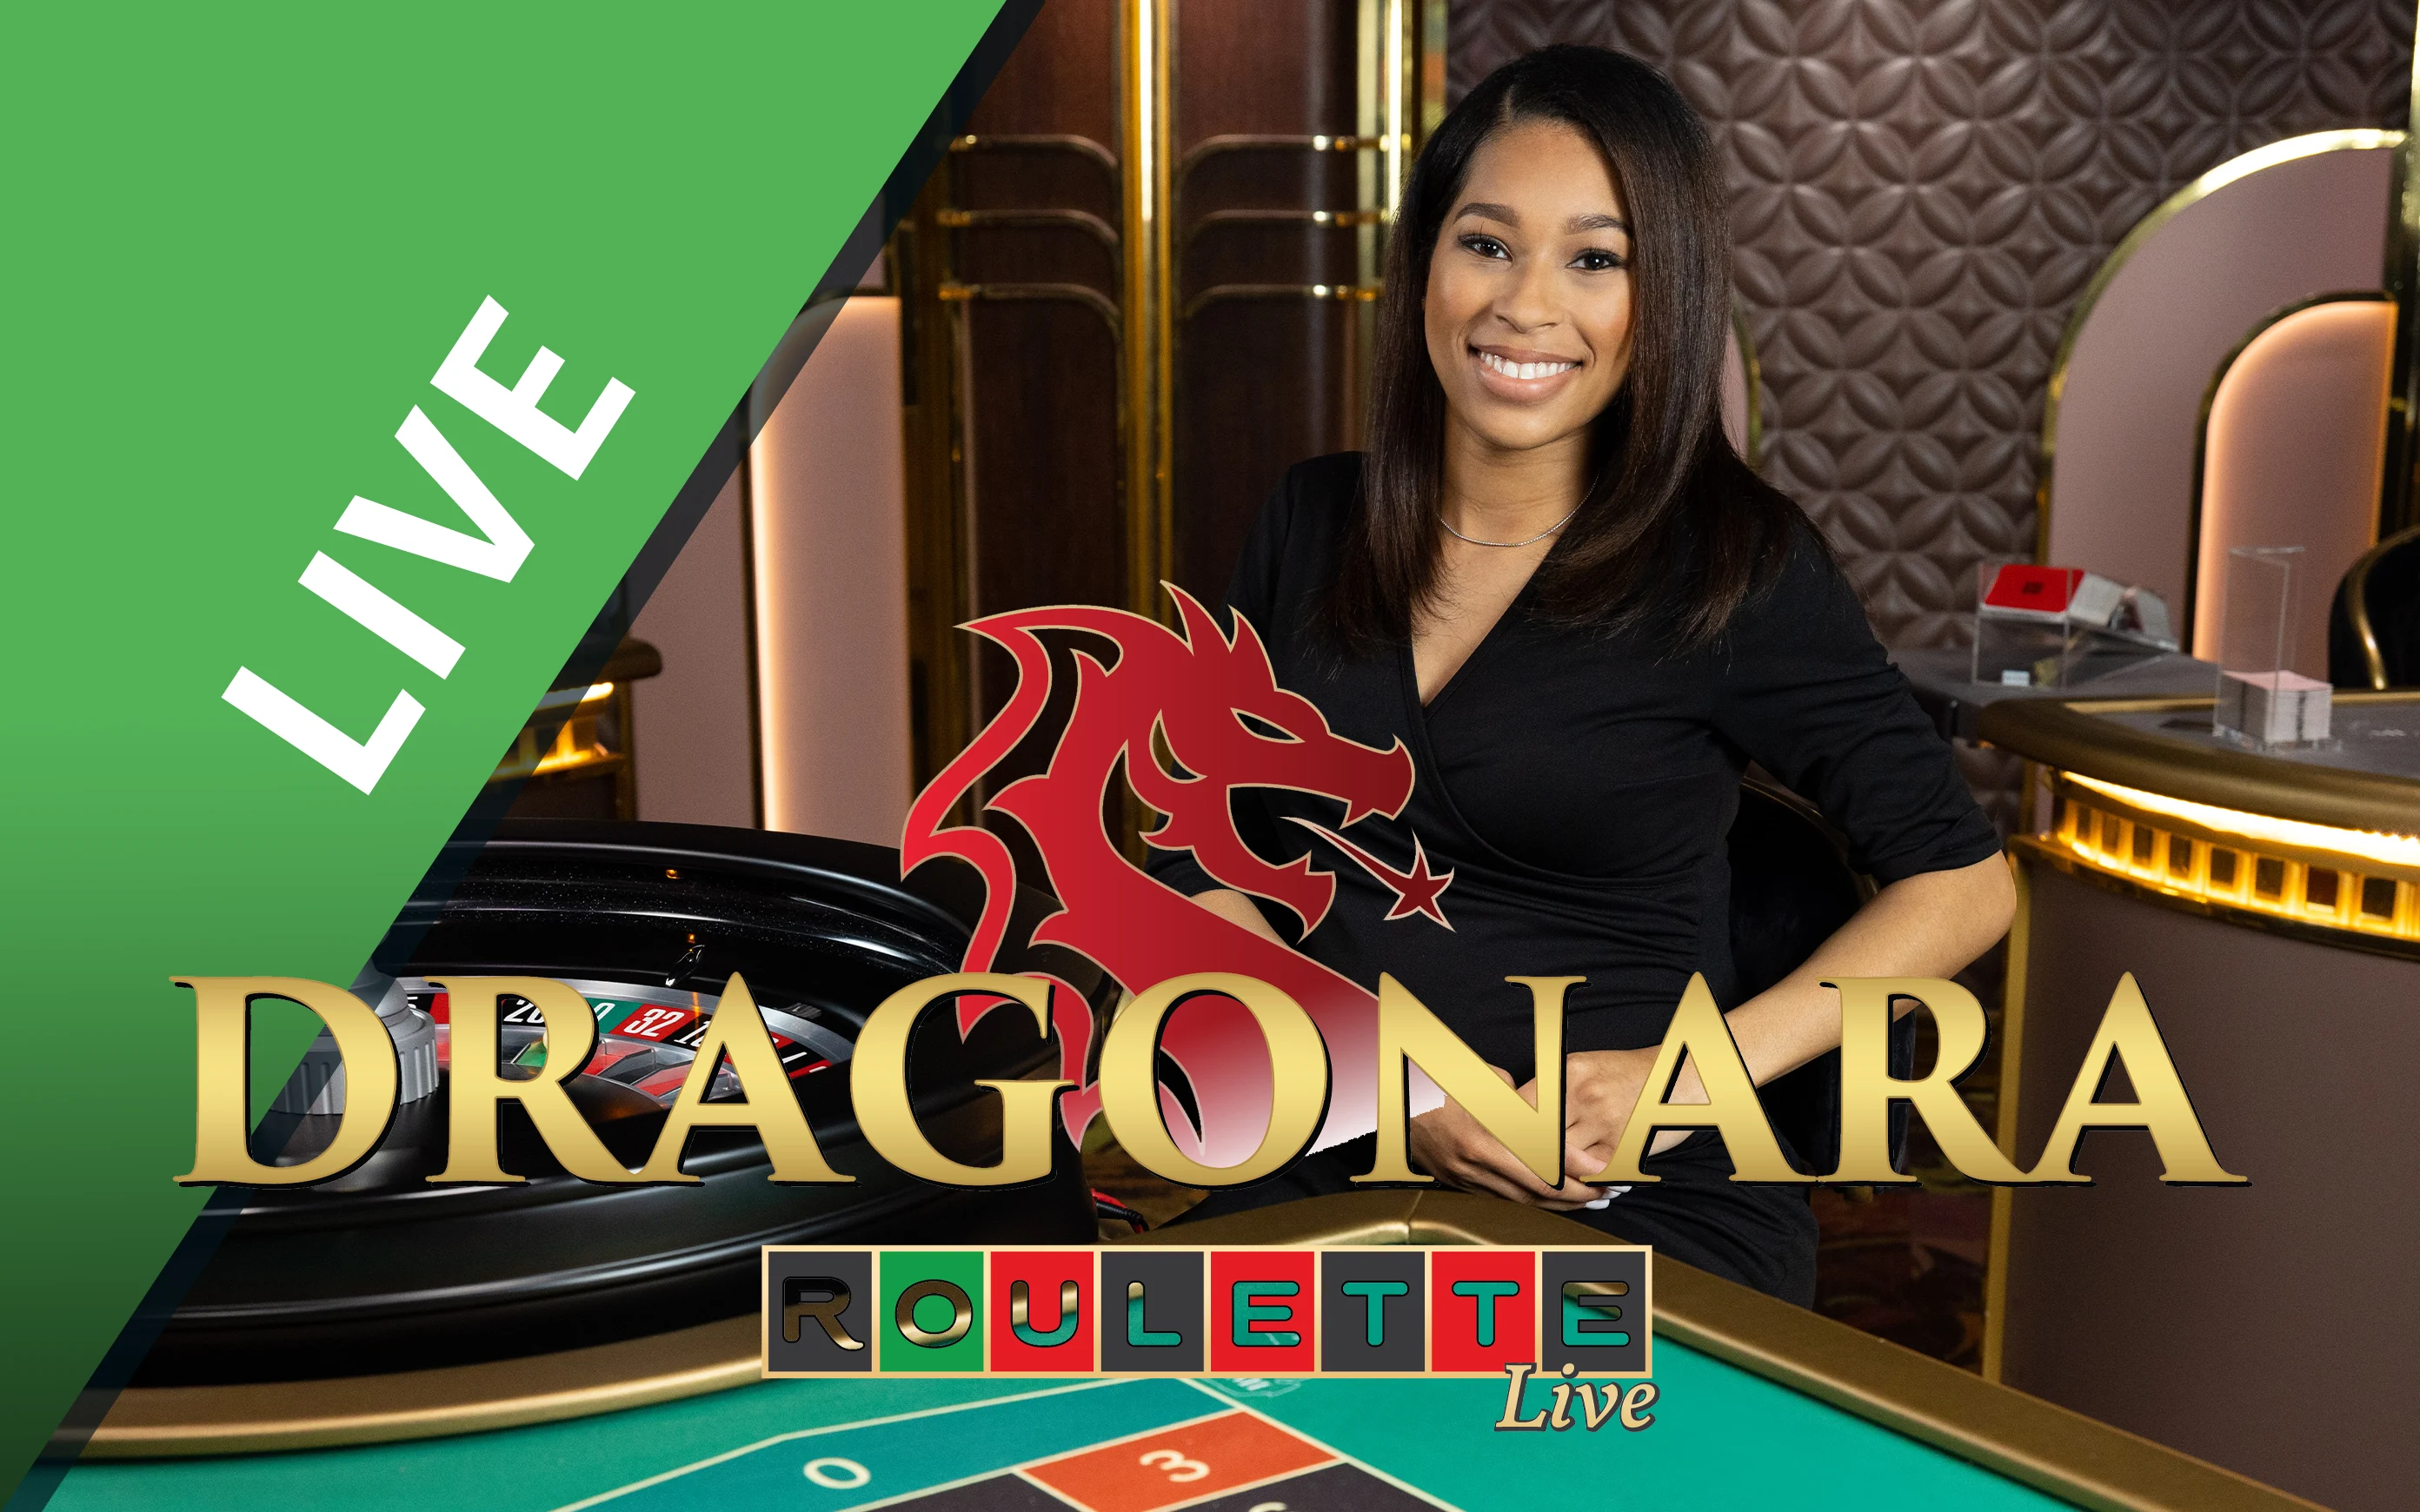 Jouer à Dragonara Roulette sur le casino en ligne Starcasino.be